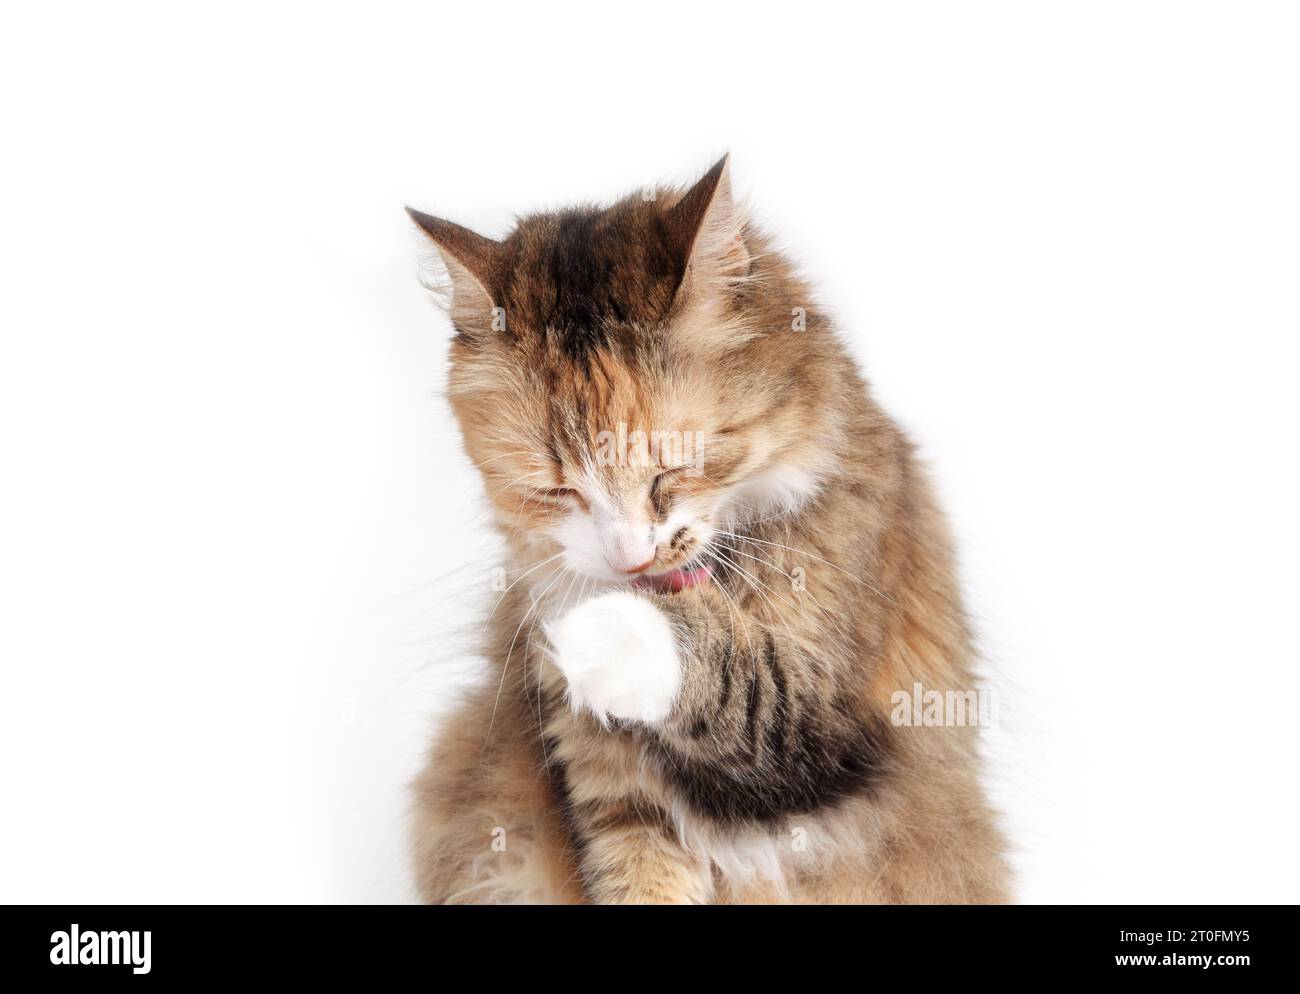 Flauschige Katze leckt die Pfote. Entspannte Kätzchen-Pflege Vorderpfote. Konzept für Pflege, gesunde Haut und Glück. 3 Jahre alt, langes Haar, Calico oder Torbie, Stockfoto